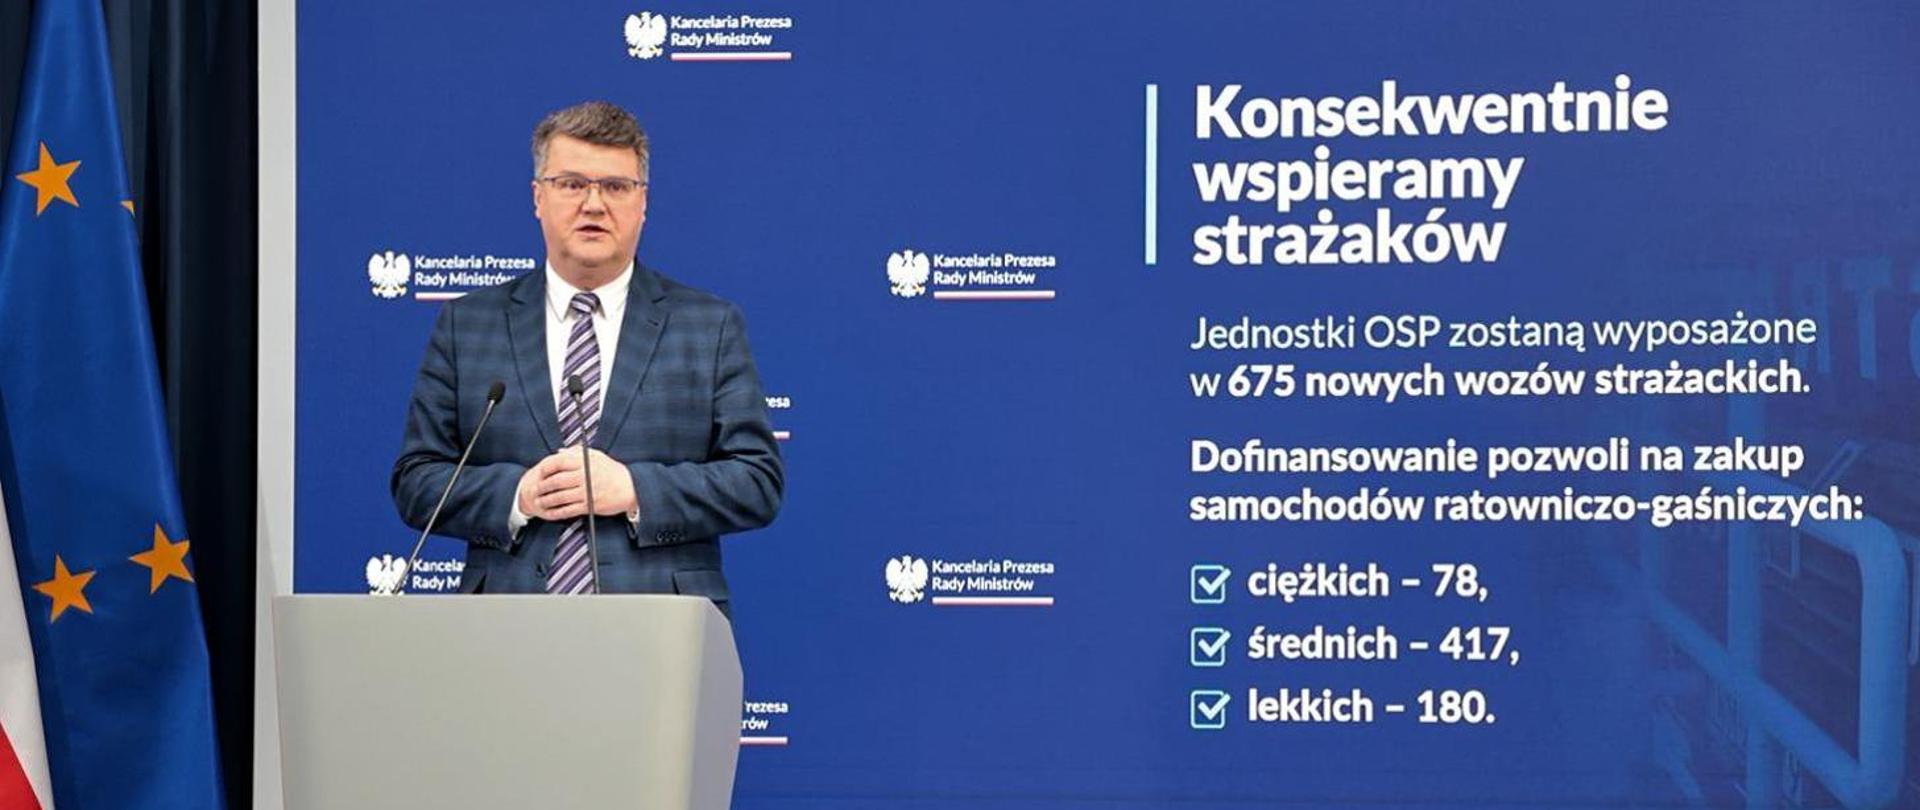 Na zdjęciu Wiceminister MSWiA Maciej Wąsik przed mównicą na tle baneru Kancelarii Prezesa Rady Ministrów dotyczącego Konsekwentego wspierania strażaków